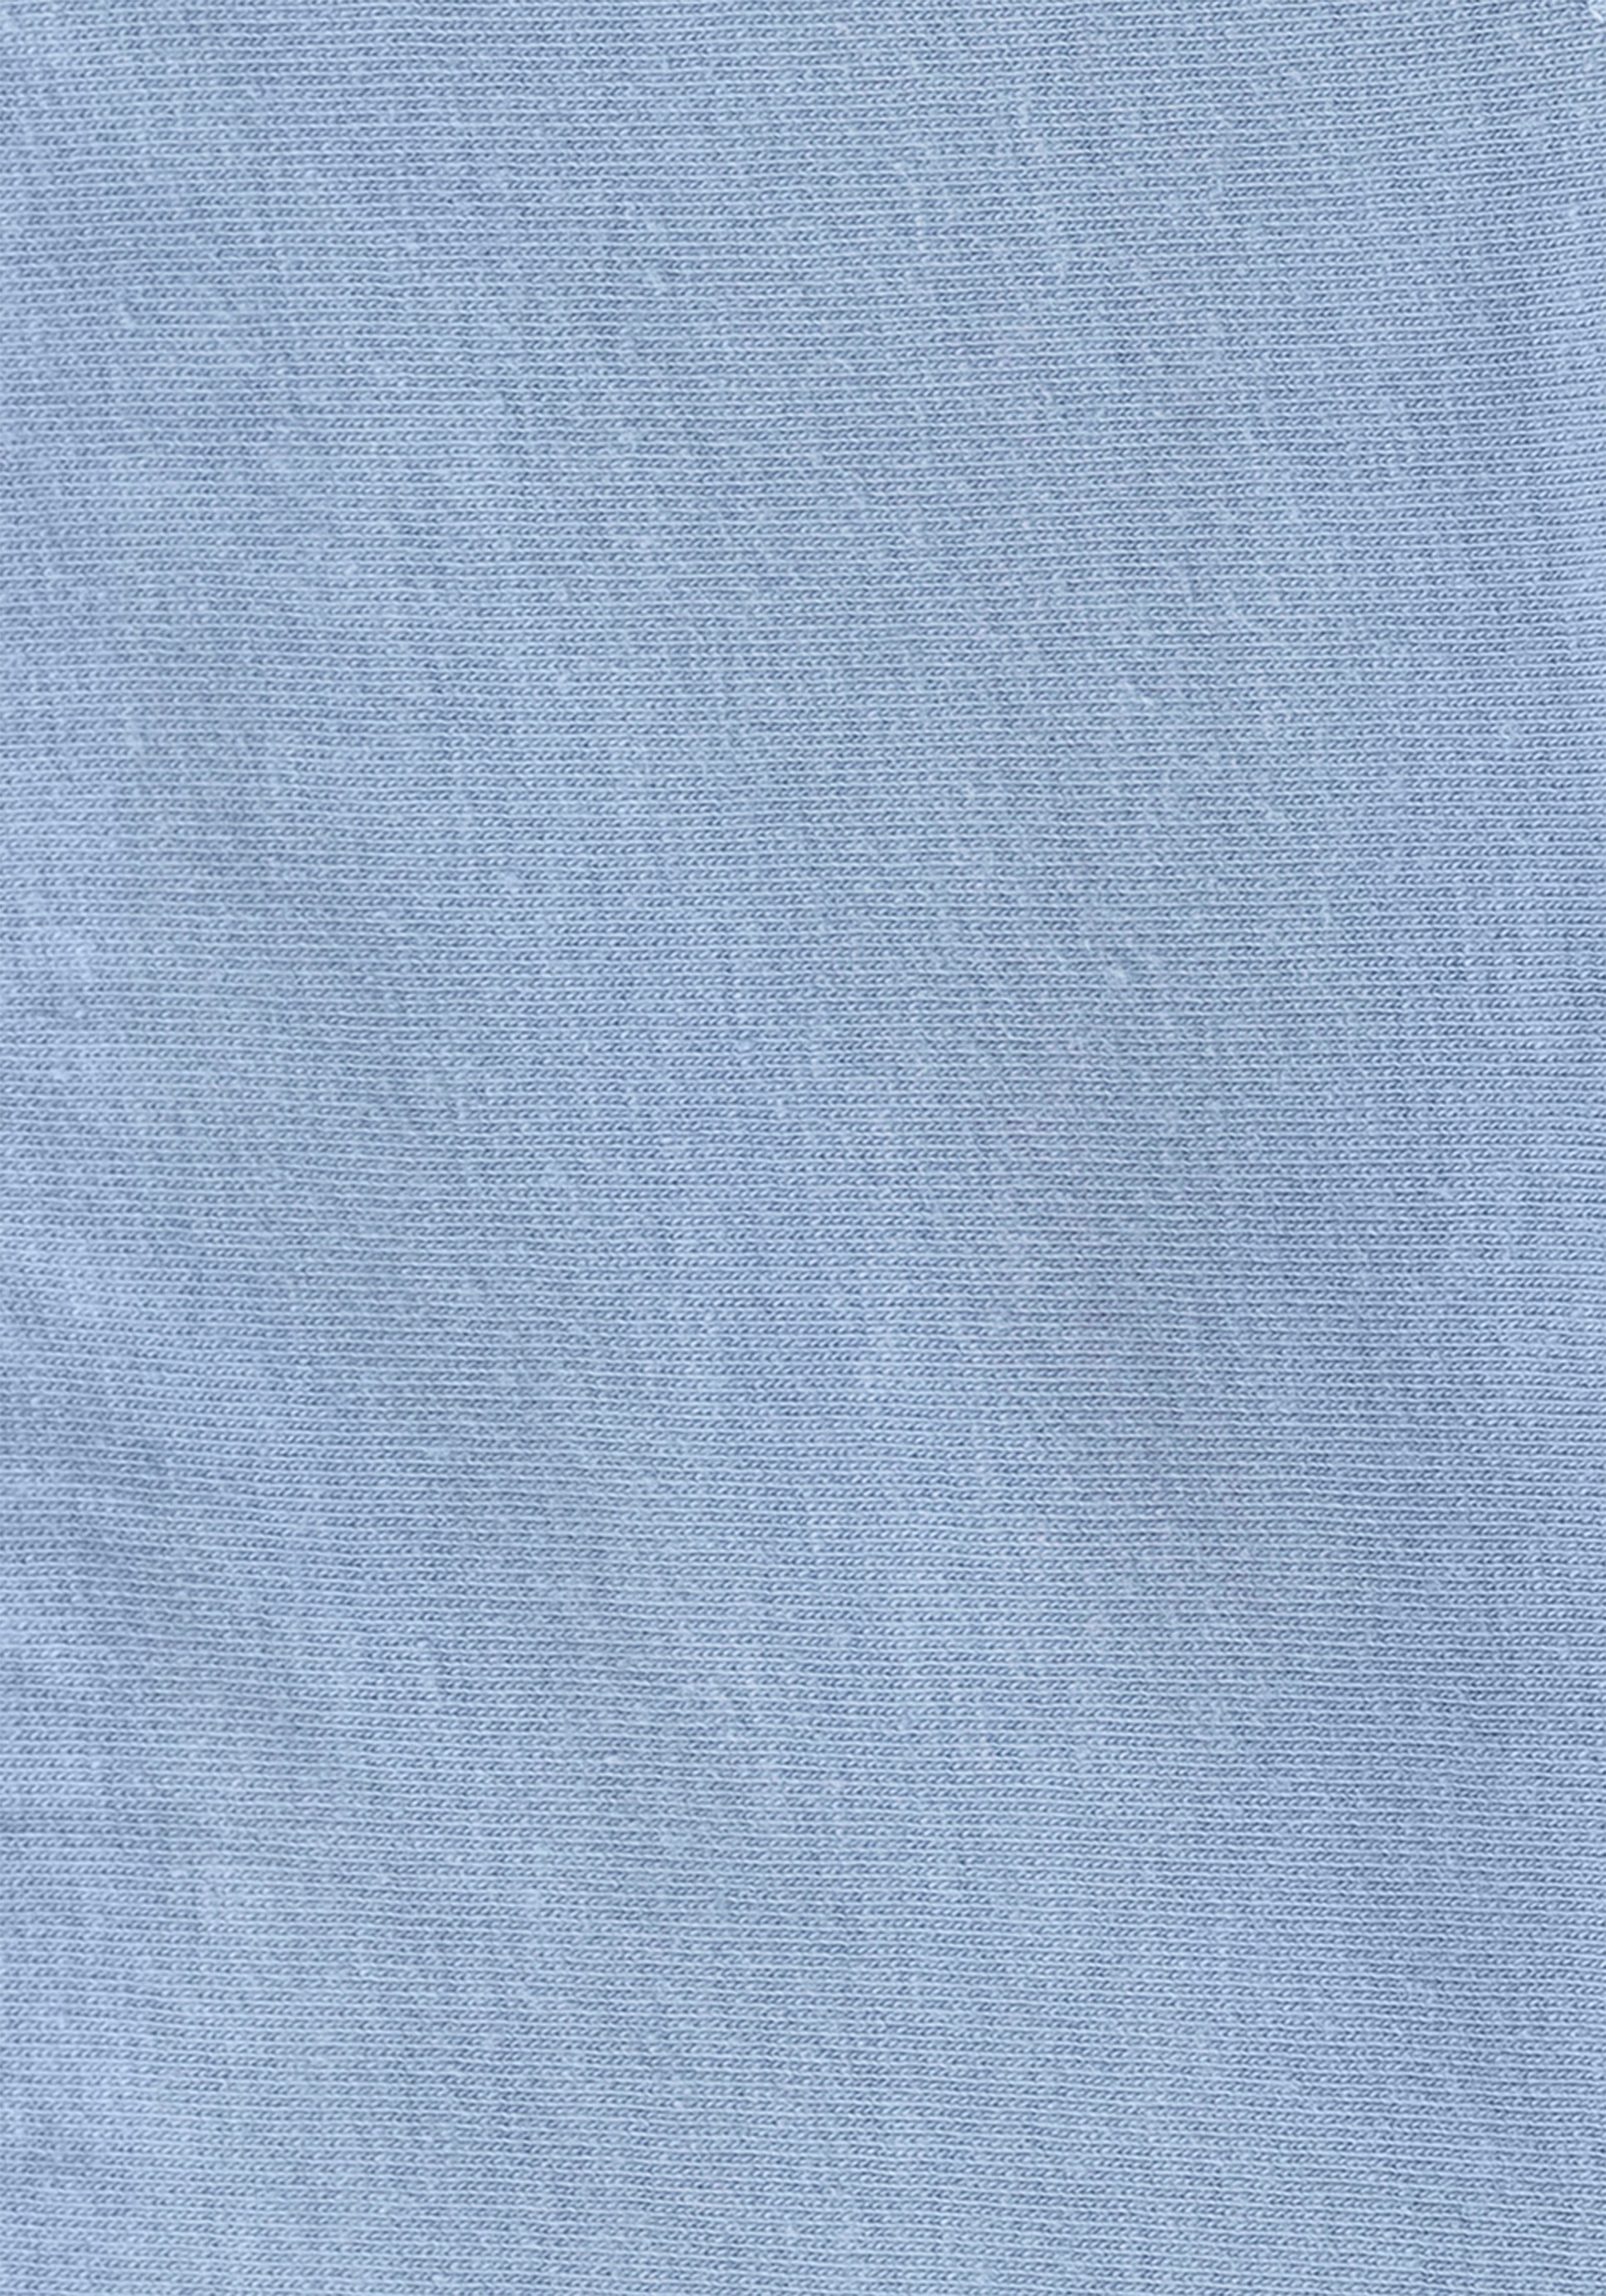 Vivance Slip + blau-geblümt, (Packung, Millefleur-Design blau-uni, grau-geblümt, Uni Packung 4-St) in weiß-uni einer